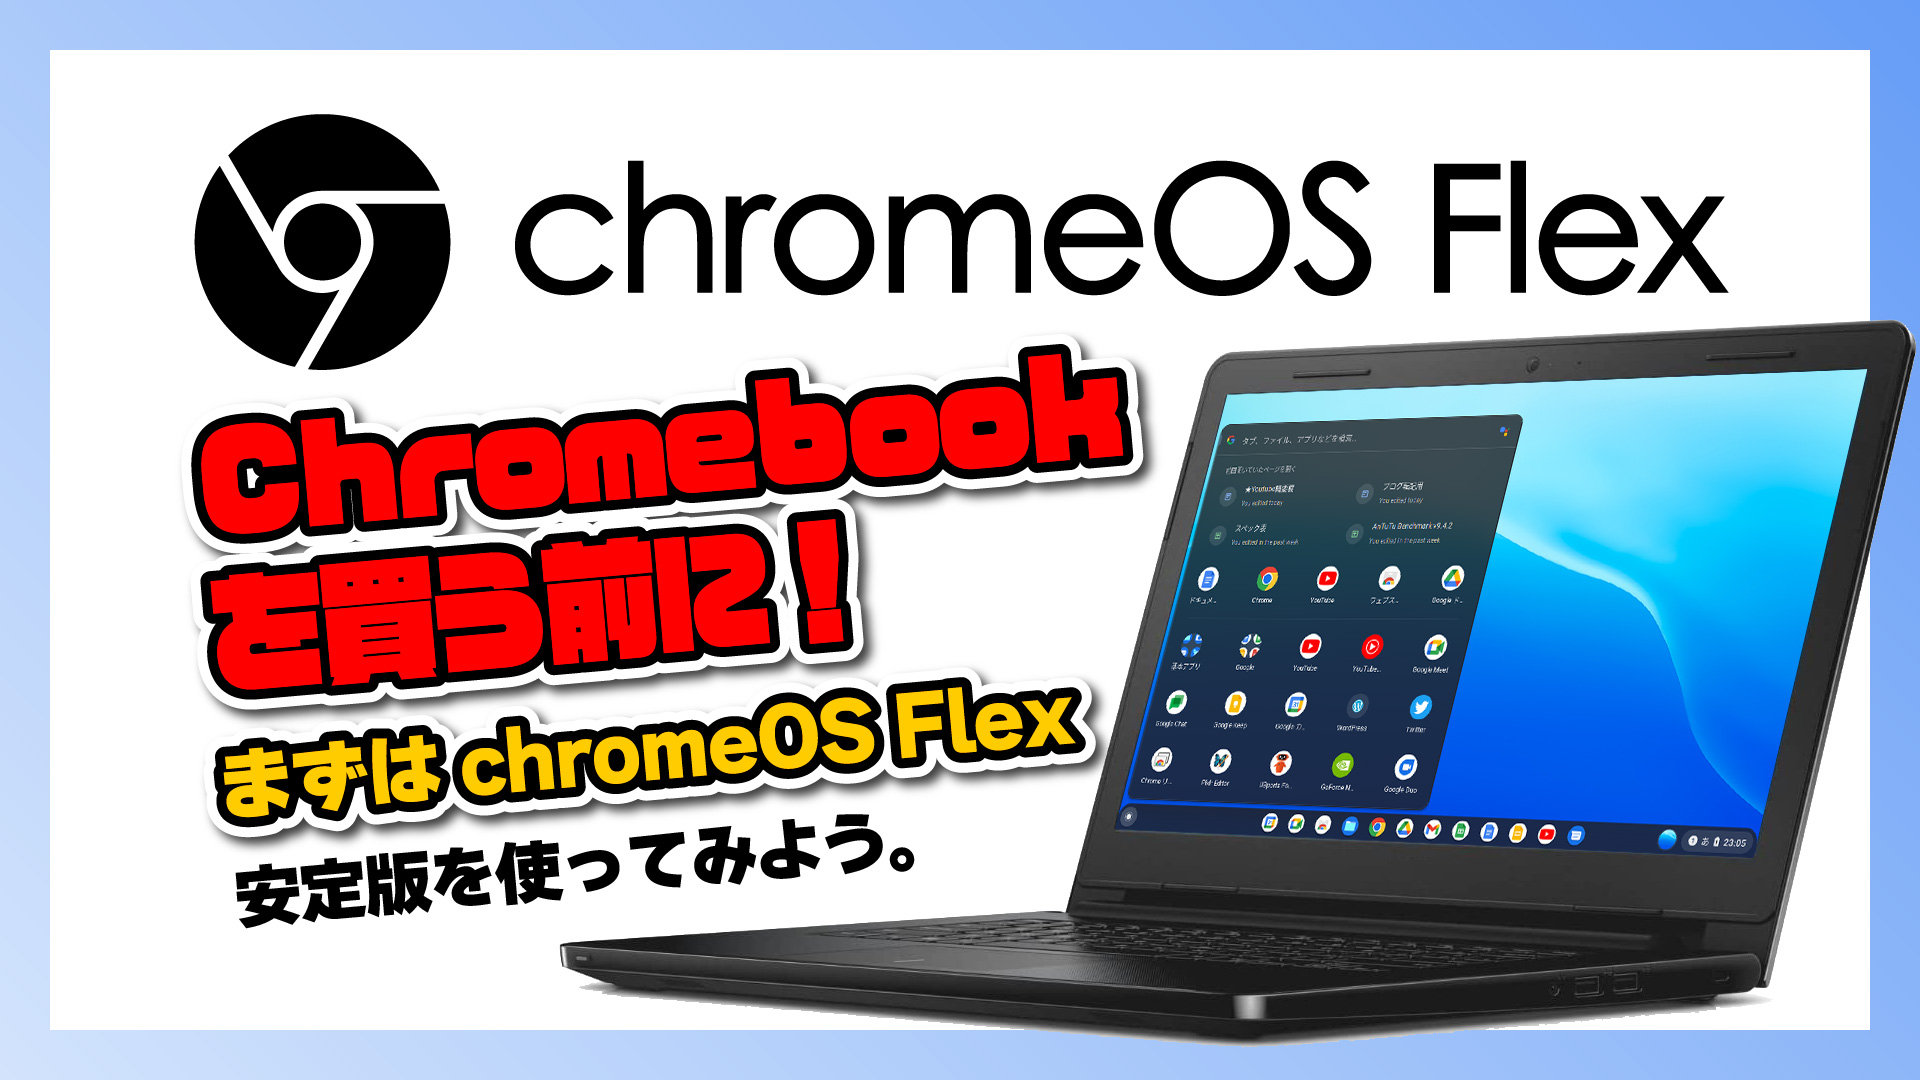 ちょっと待って！Chromebook を買う前に！まずは Google 製の Chrome OS Flex の安定版を使ってみうよう。